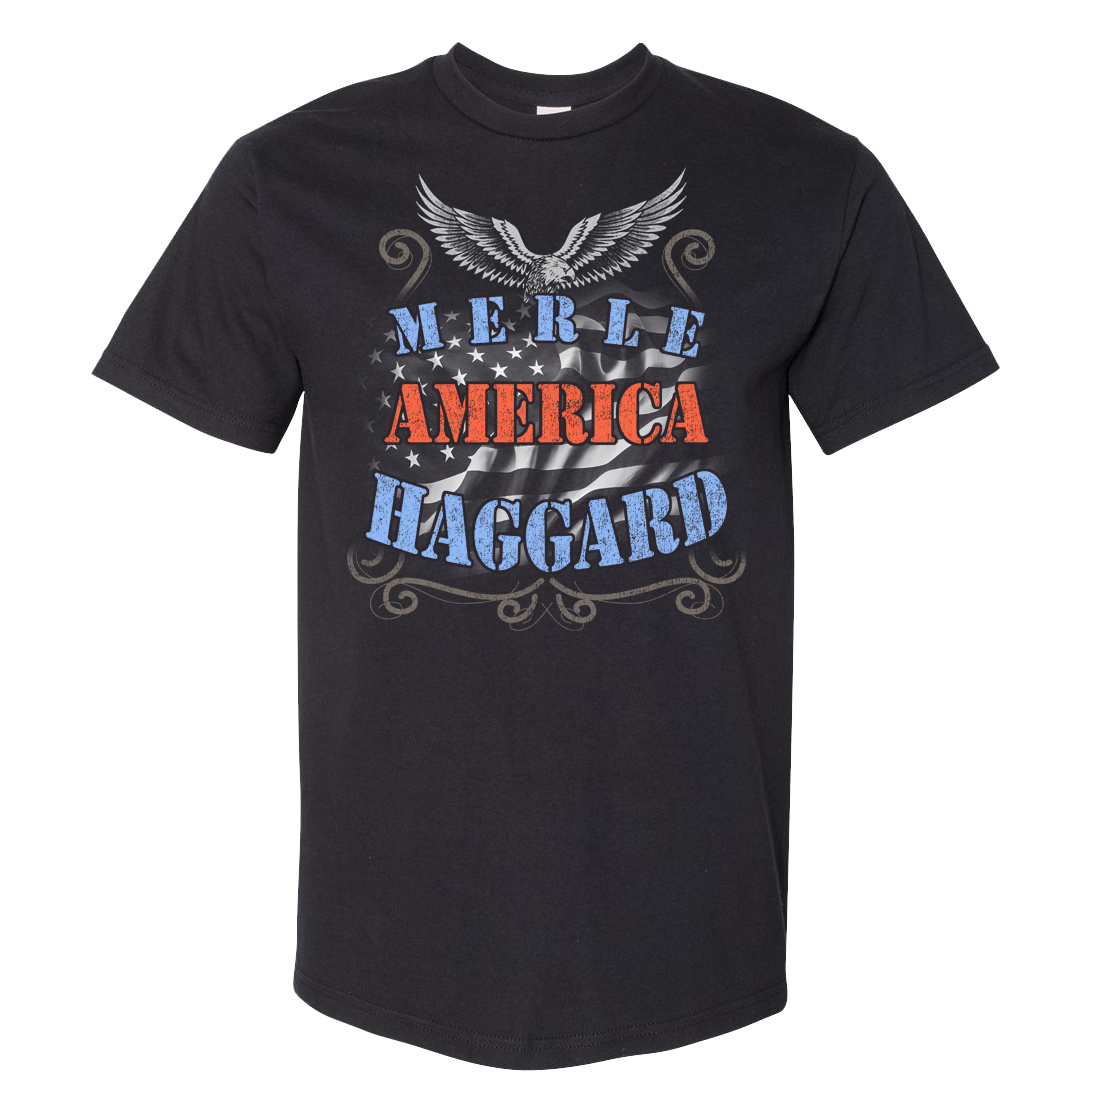 Merle Haggard American Eagle Tee